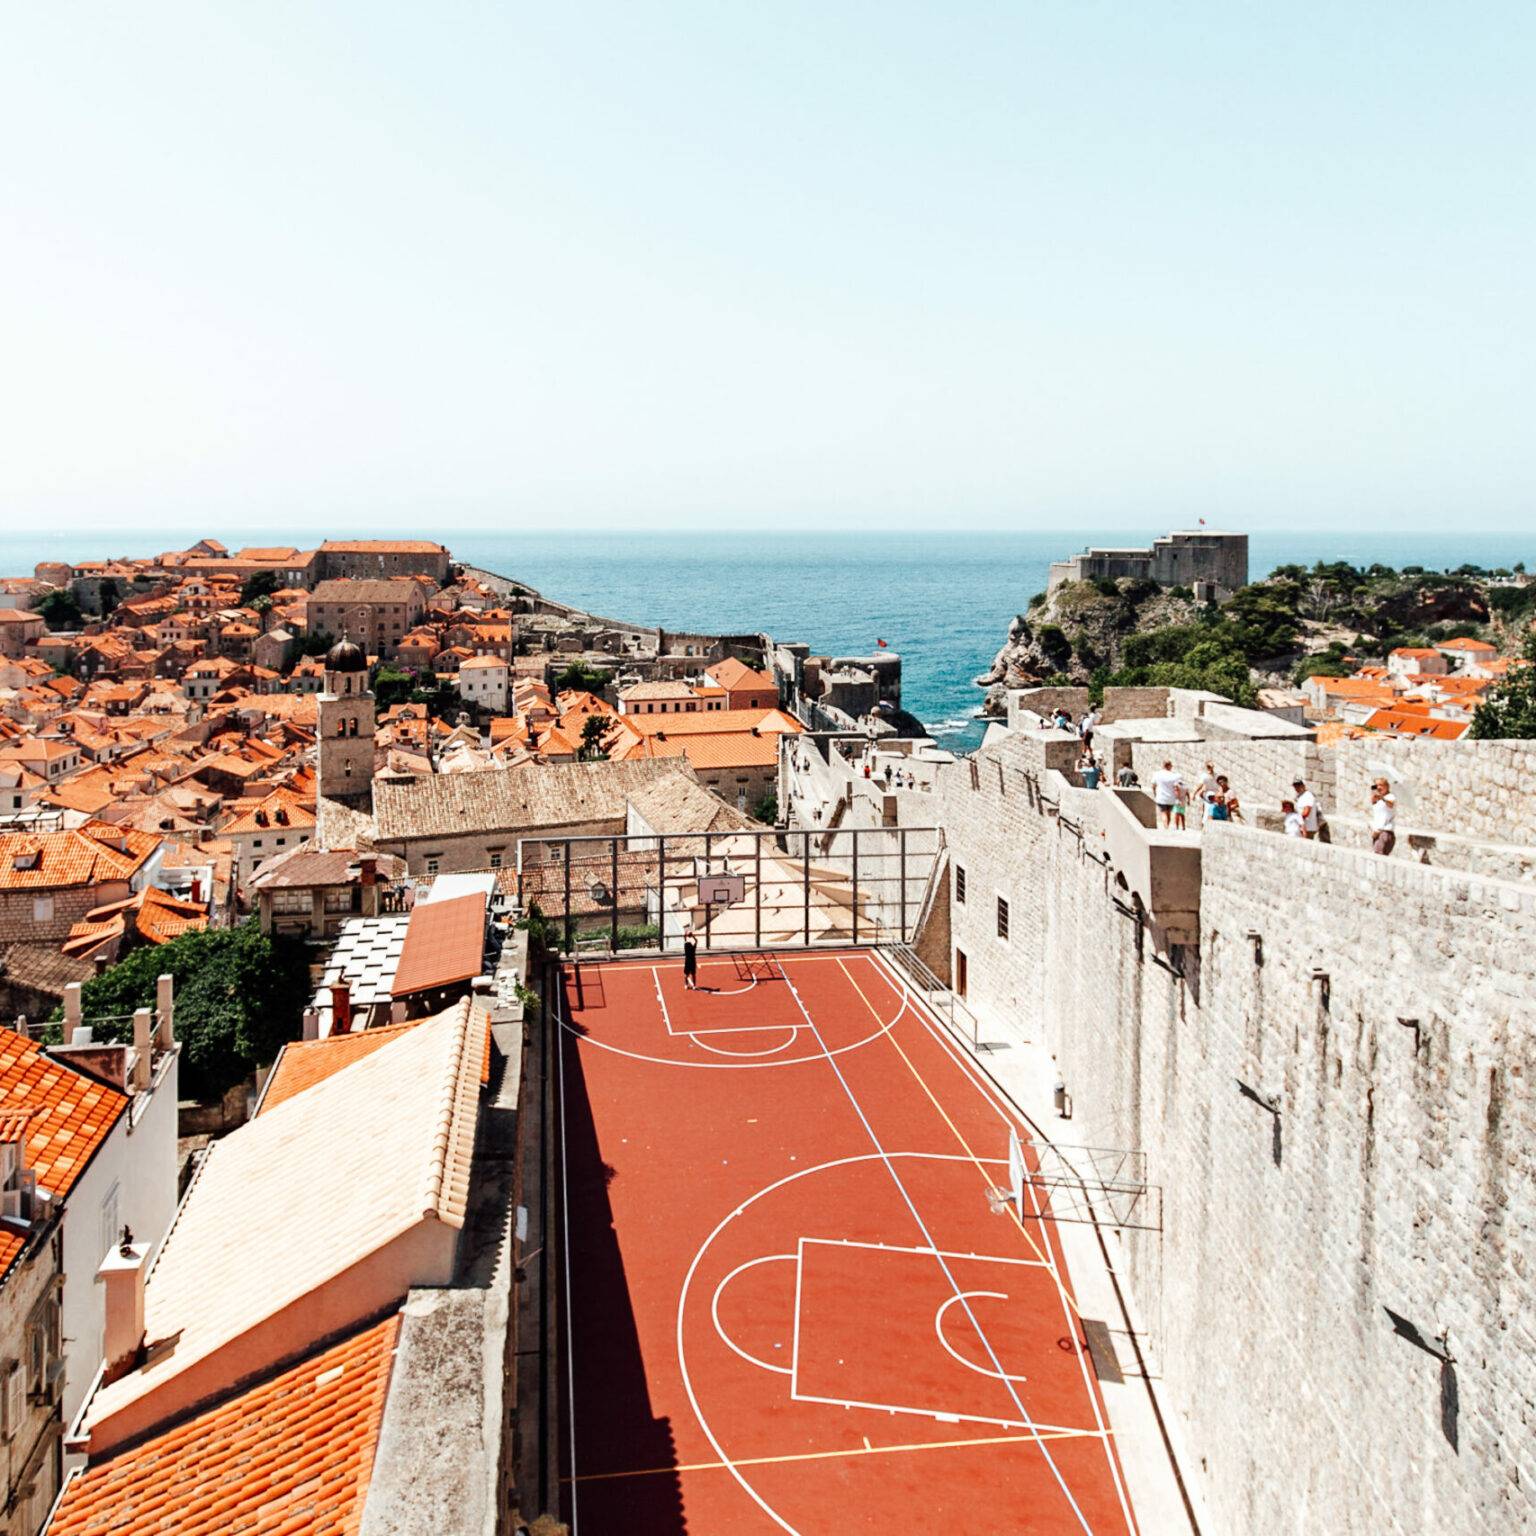 Blick auf einen Basketballplatz auf dem Dach eines Gebäudes in Dubrovnik.